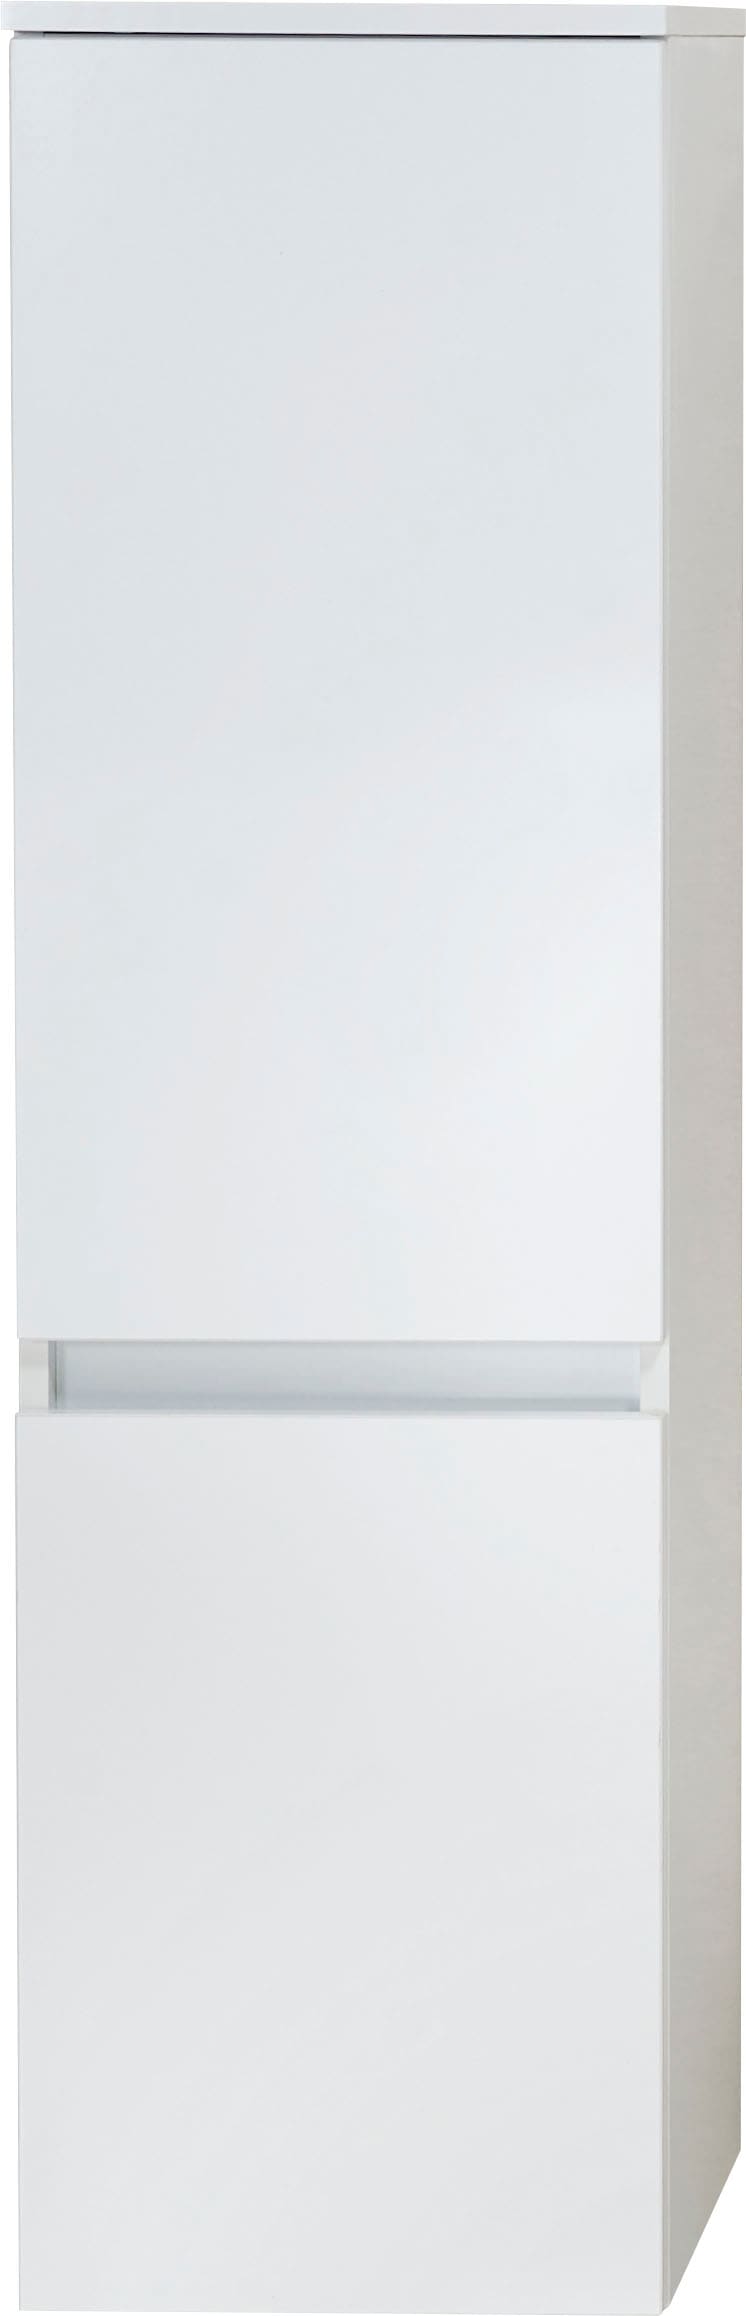 Saphir Midischrank »Quickset 360 Badschrank in Weiß Glanz mit 2 Türen, 3 Glas-Einlegeböden«, inkl. Türdämpfer, 35 cm breit, 124,5 cm hoch, grifflos, wandhängend